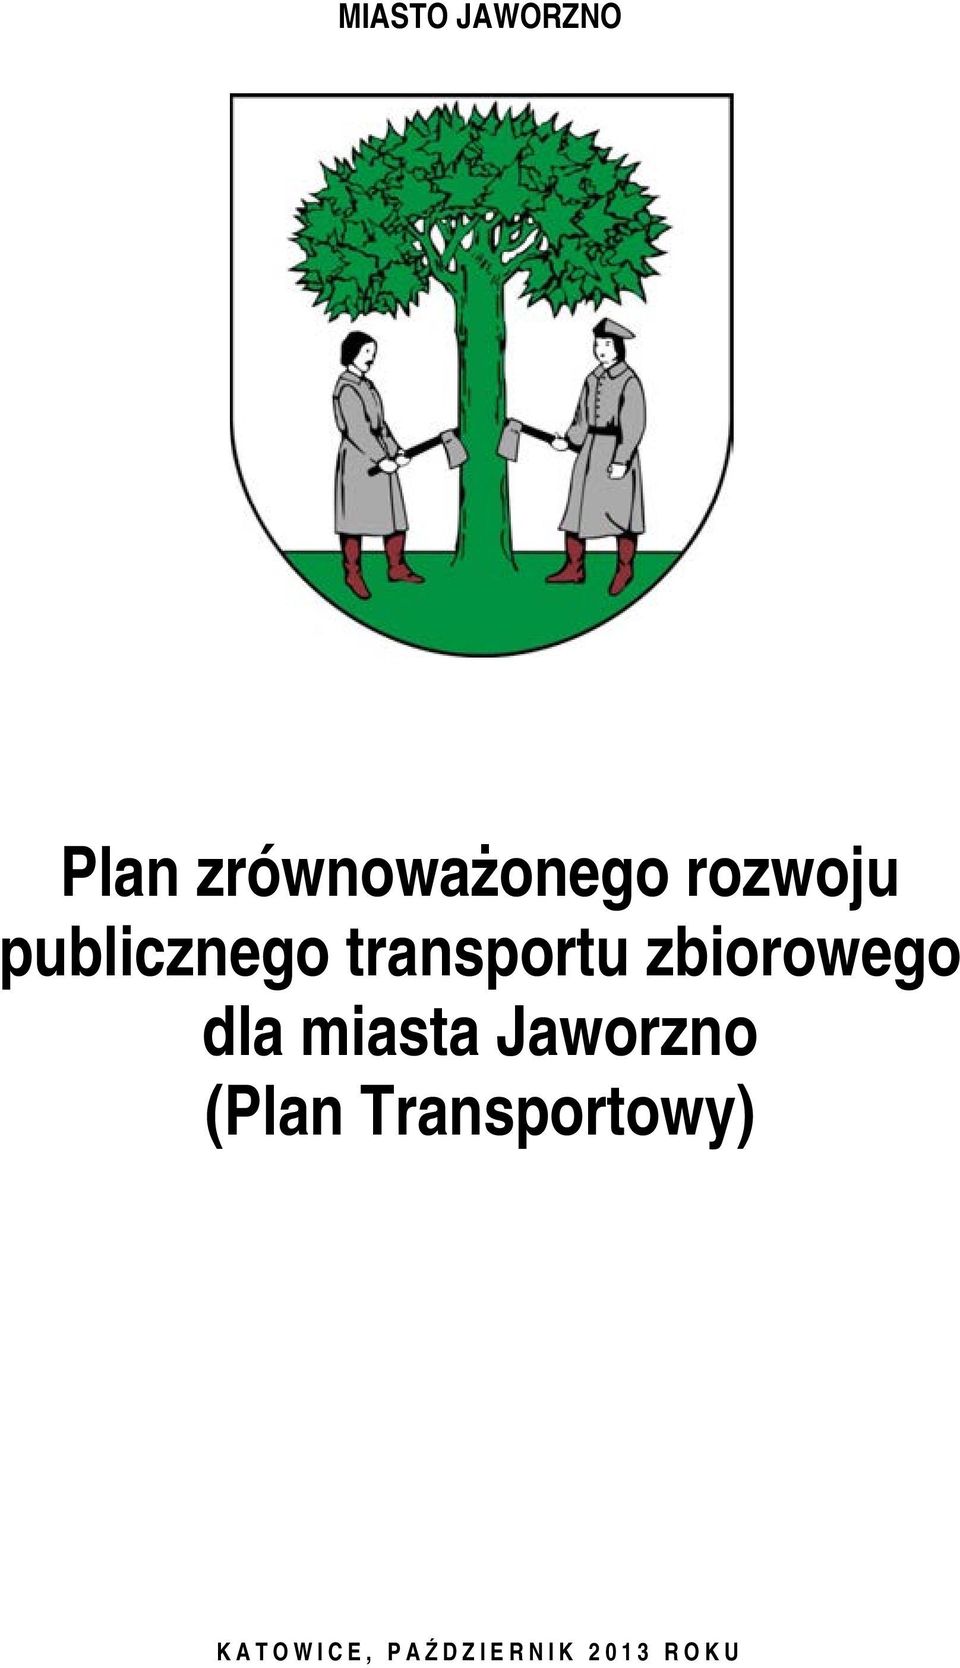 zbiorowego dla miasta Jaworzno (Plan